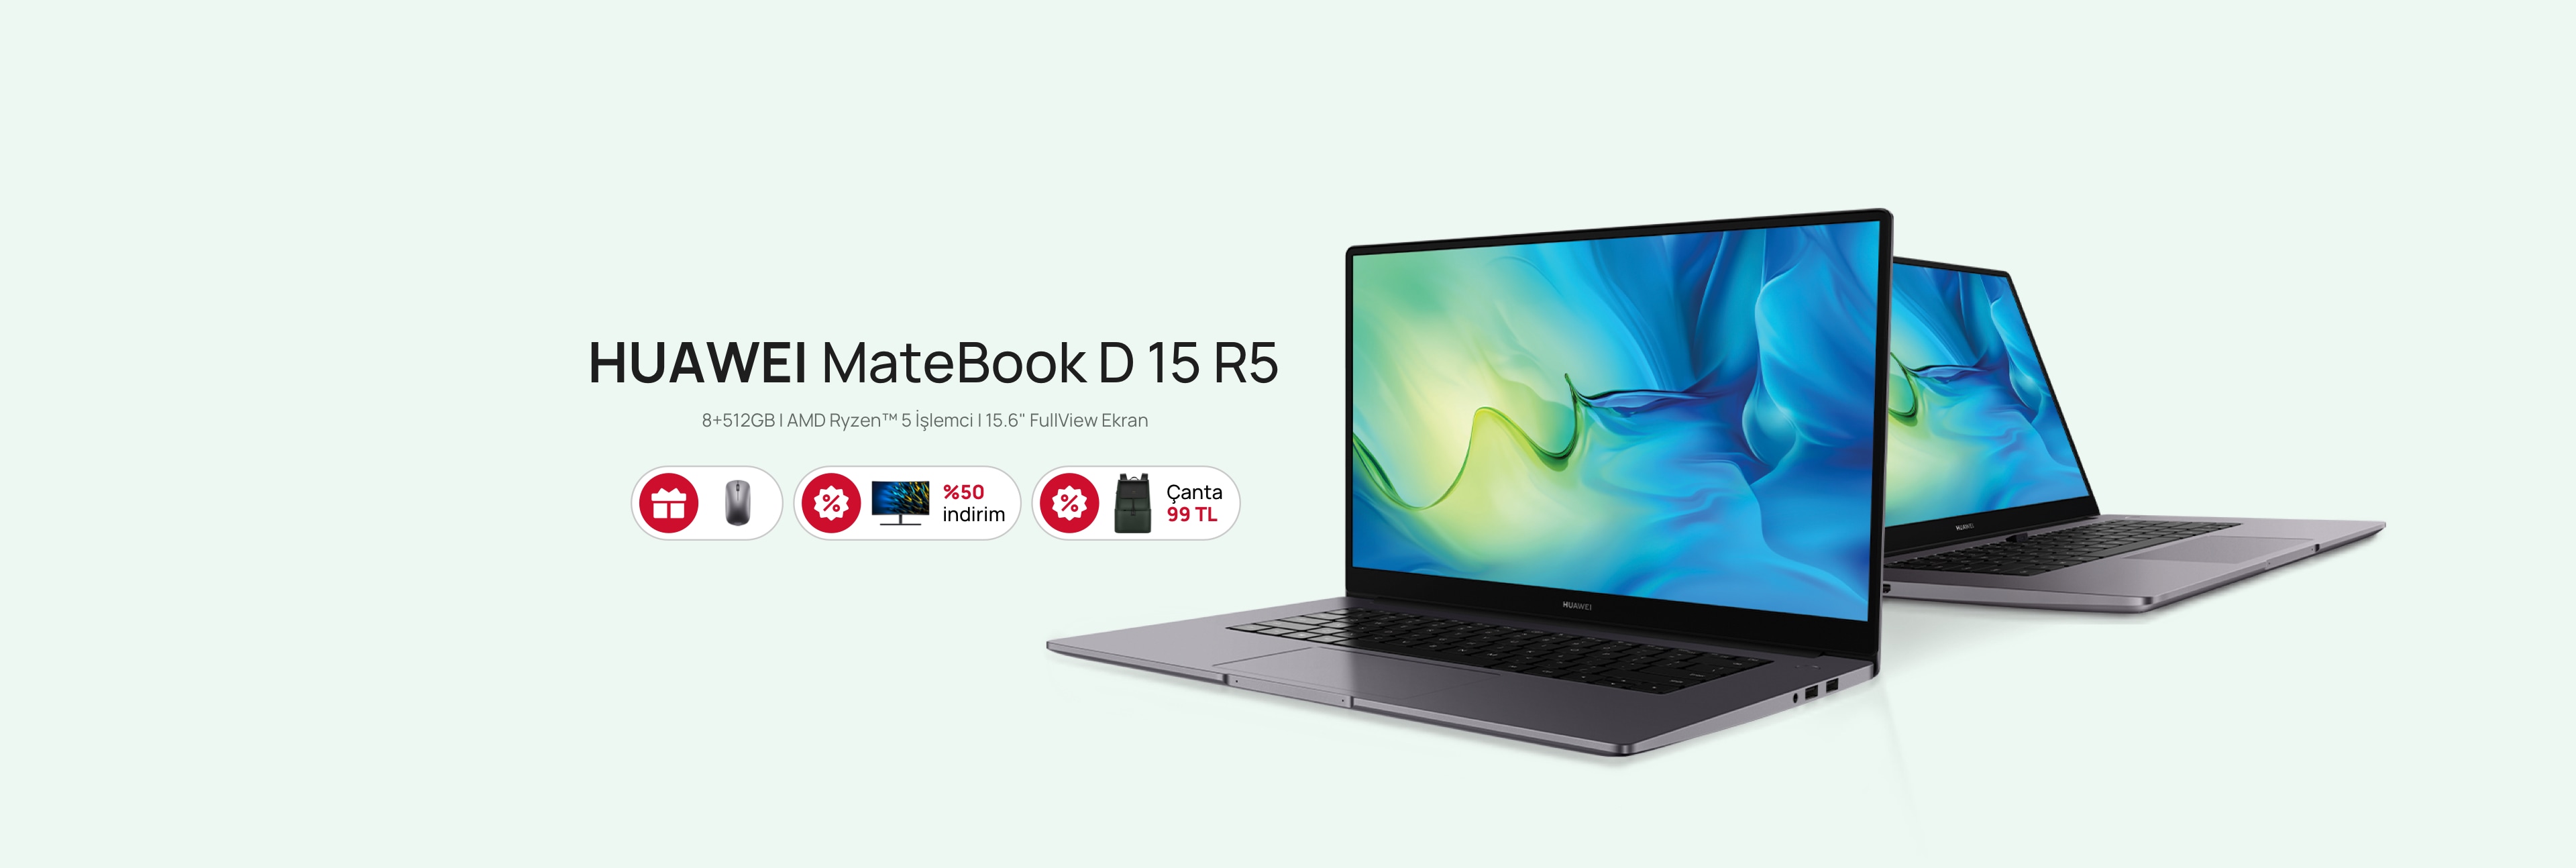 TR 1605 MateBook D 15 Desktop